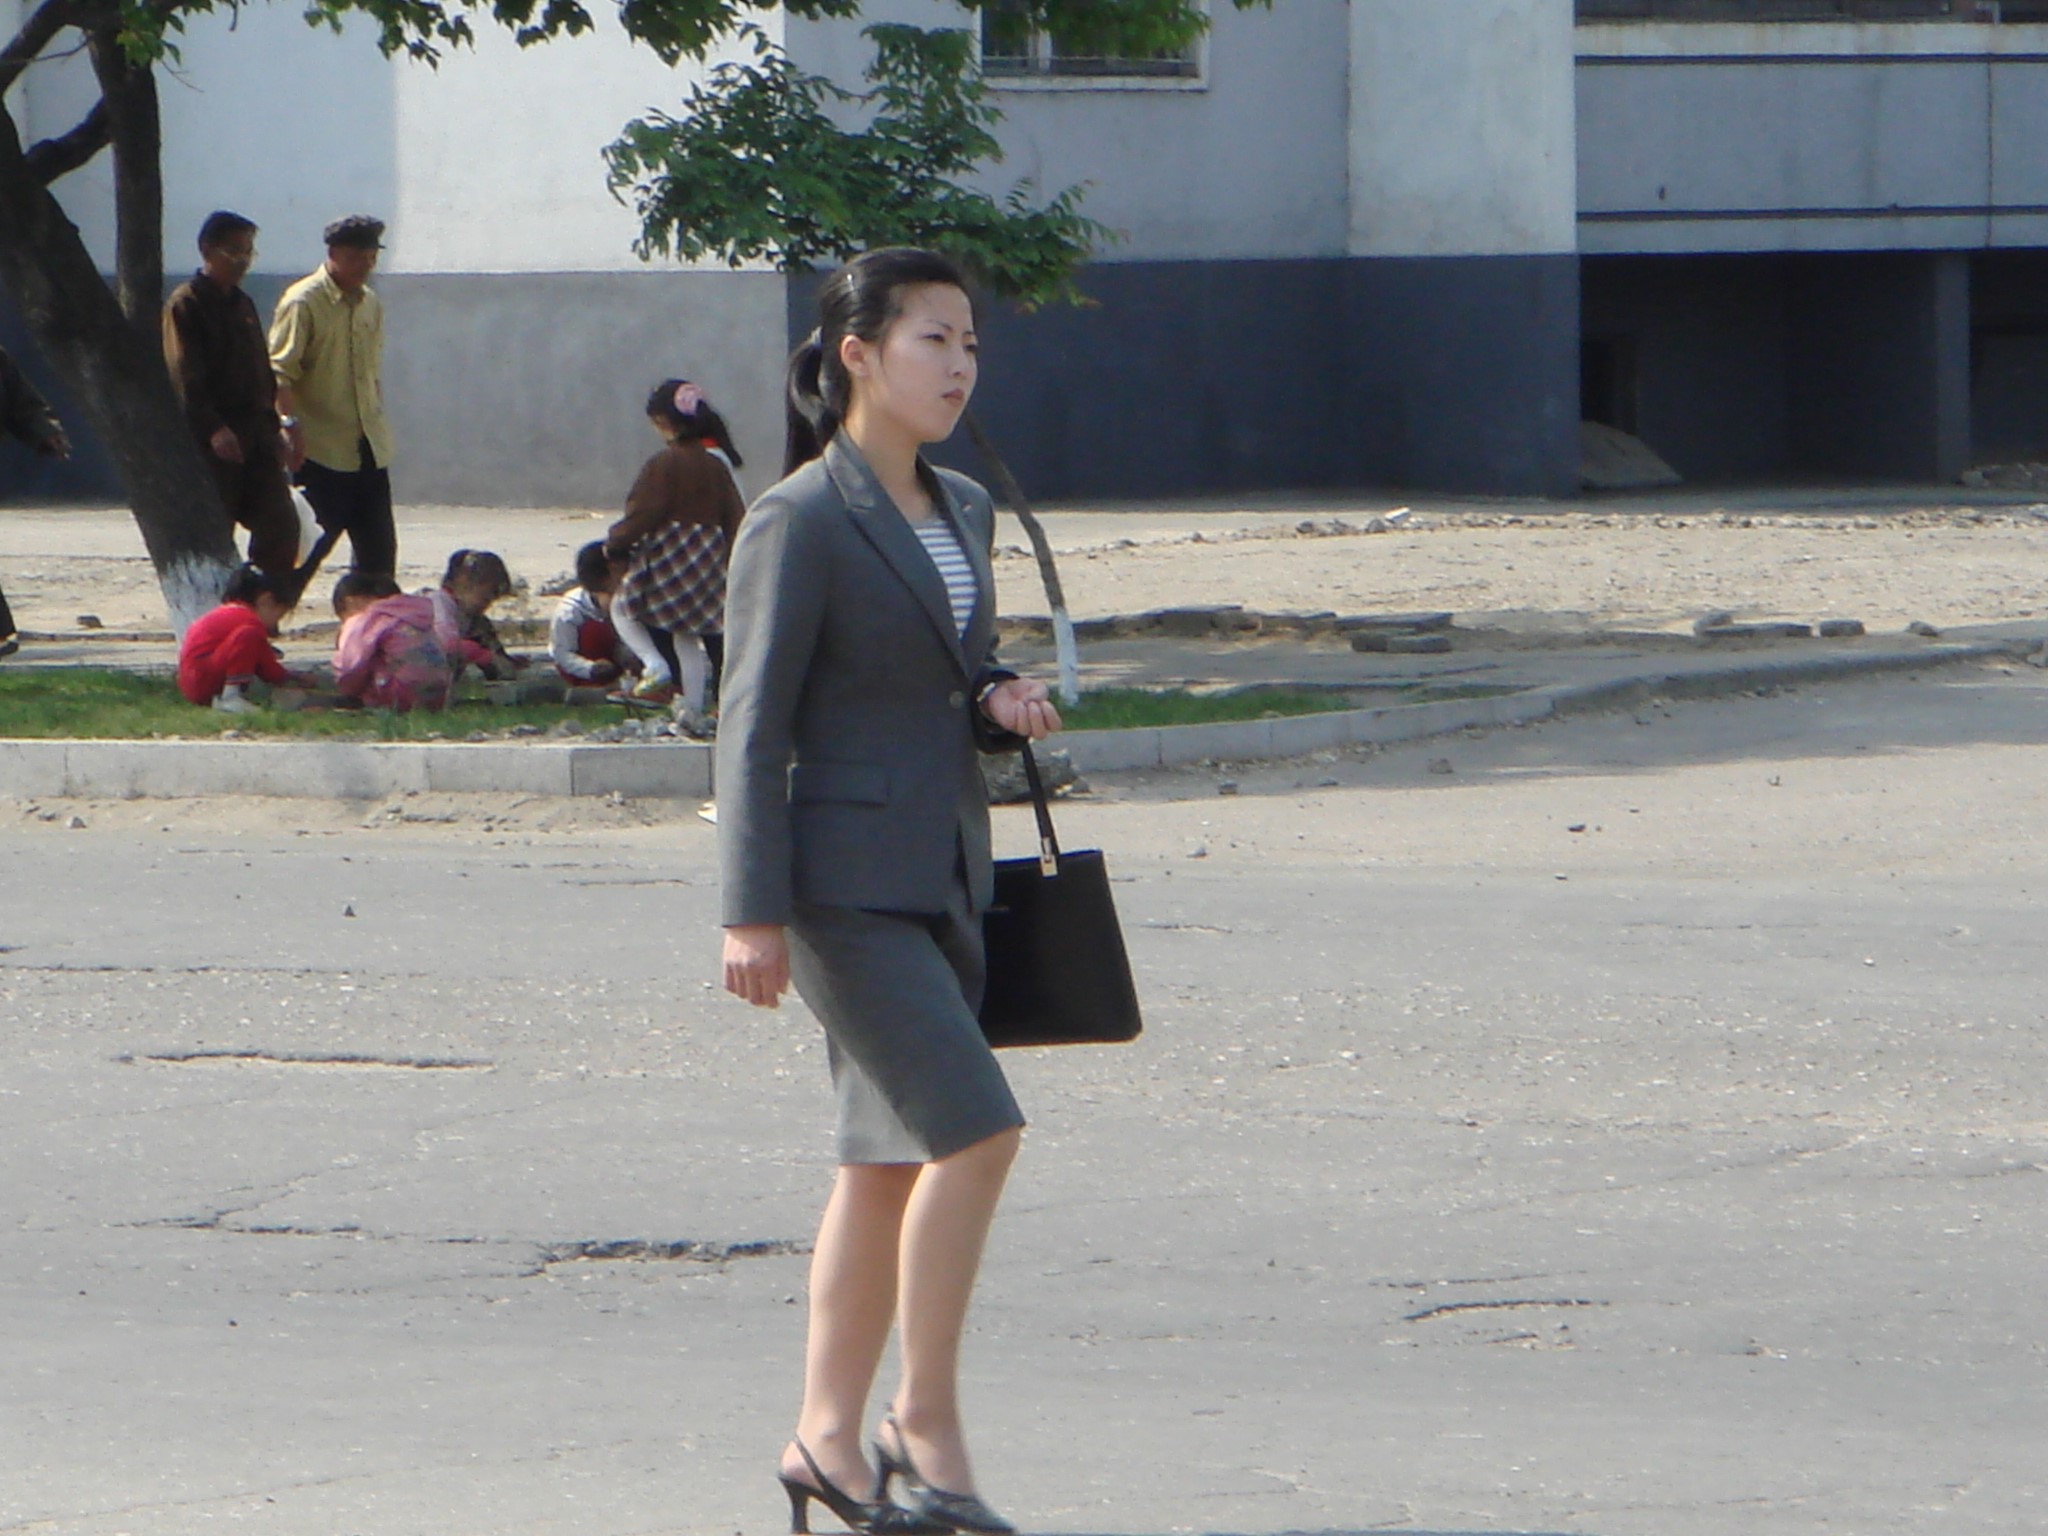 朝鲜街头美女图片